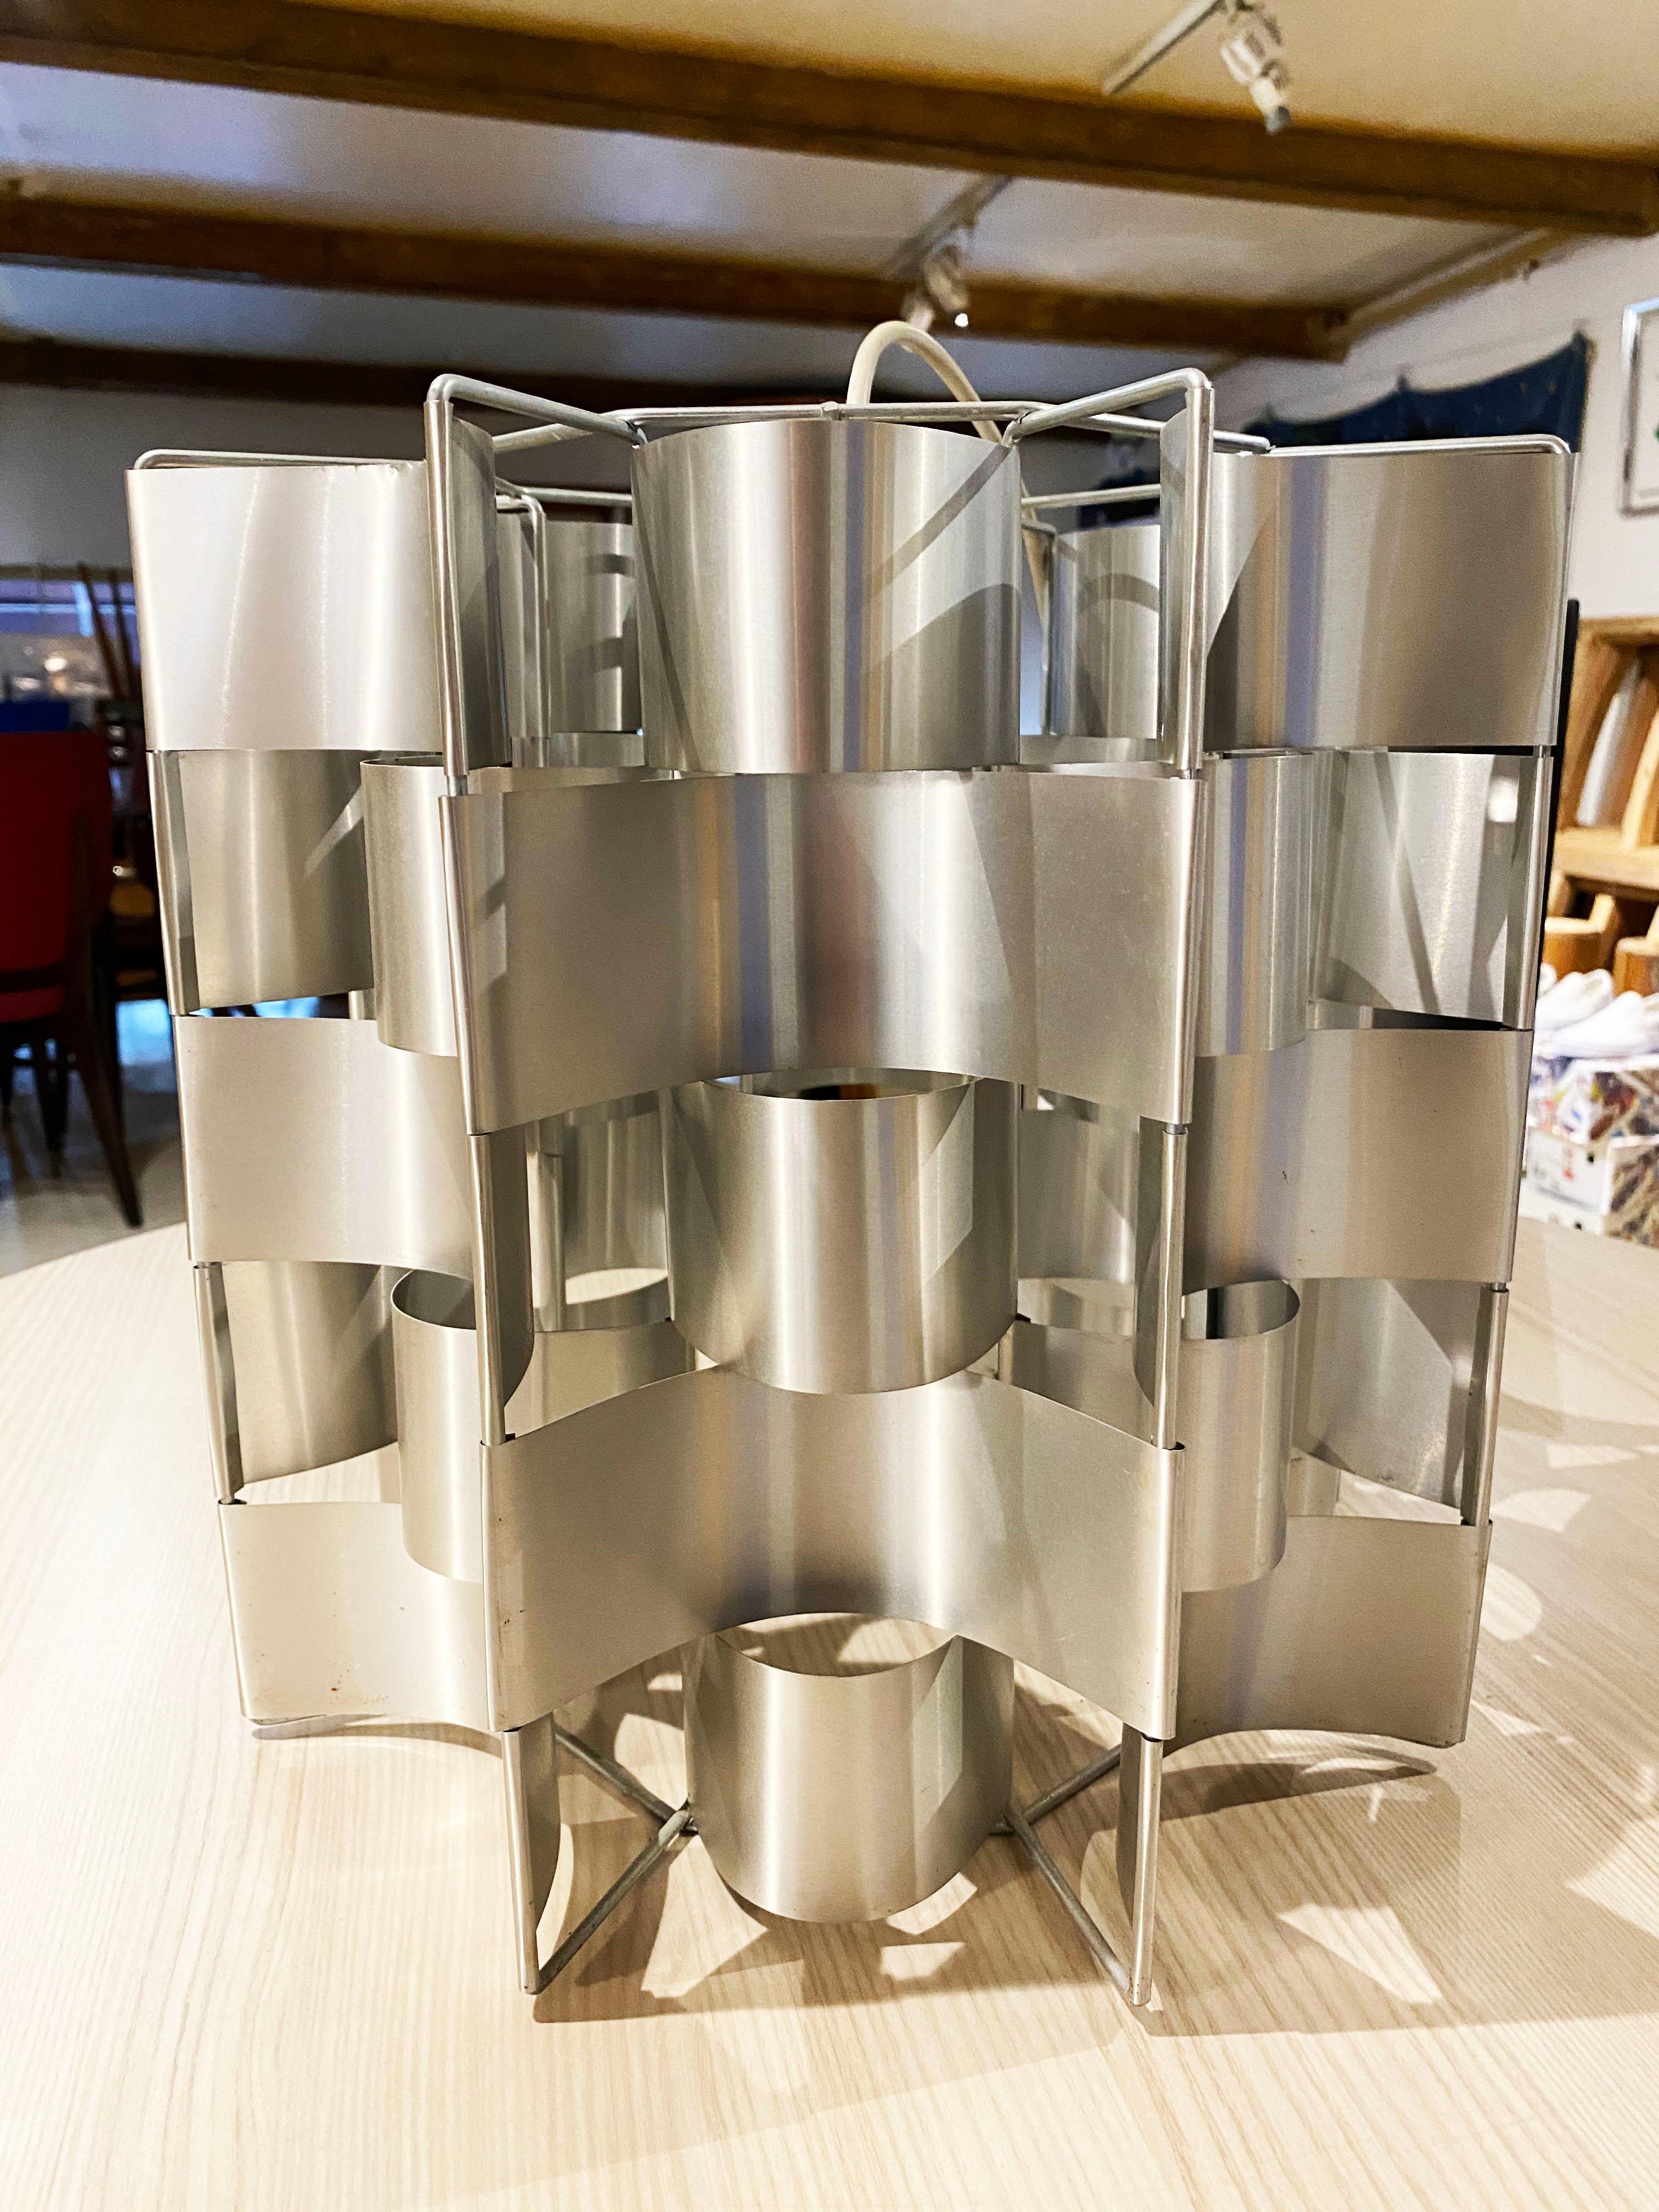 Max Sauze aluminum chandelier, 1975
Measures: 32 x 34.